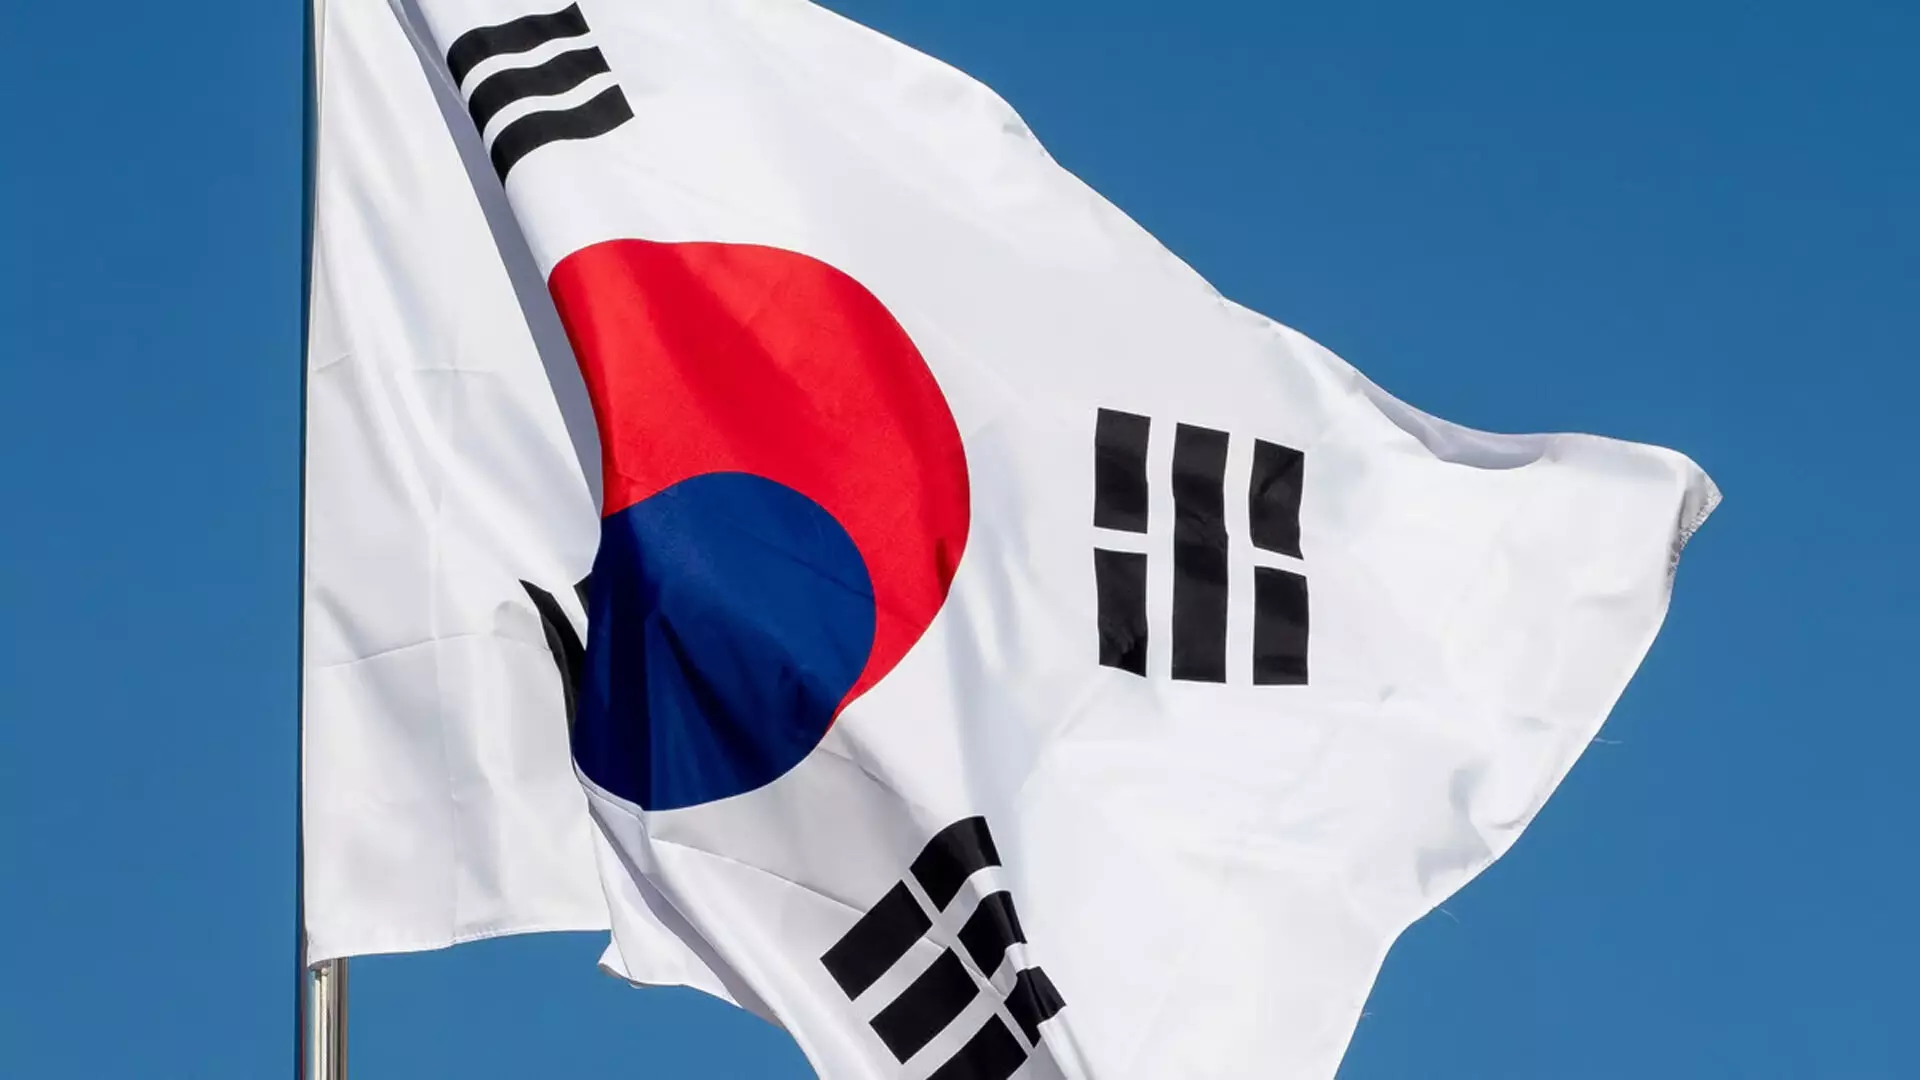 South Korea में अध्ययन: अंतर्राष्ट्रीय छात्रों के लिए शीर्ष 10 विश्वविद्यालय